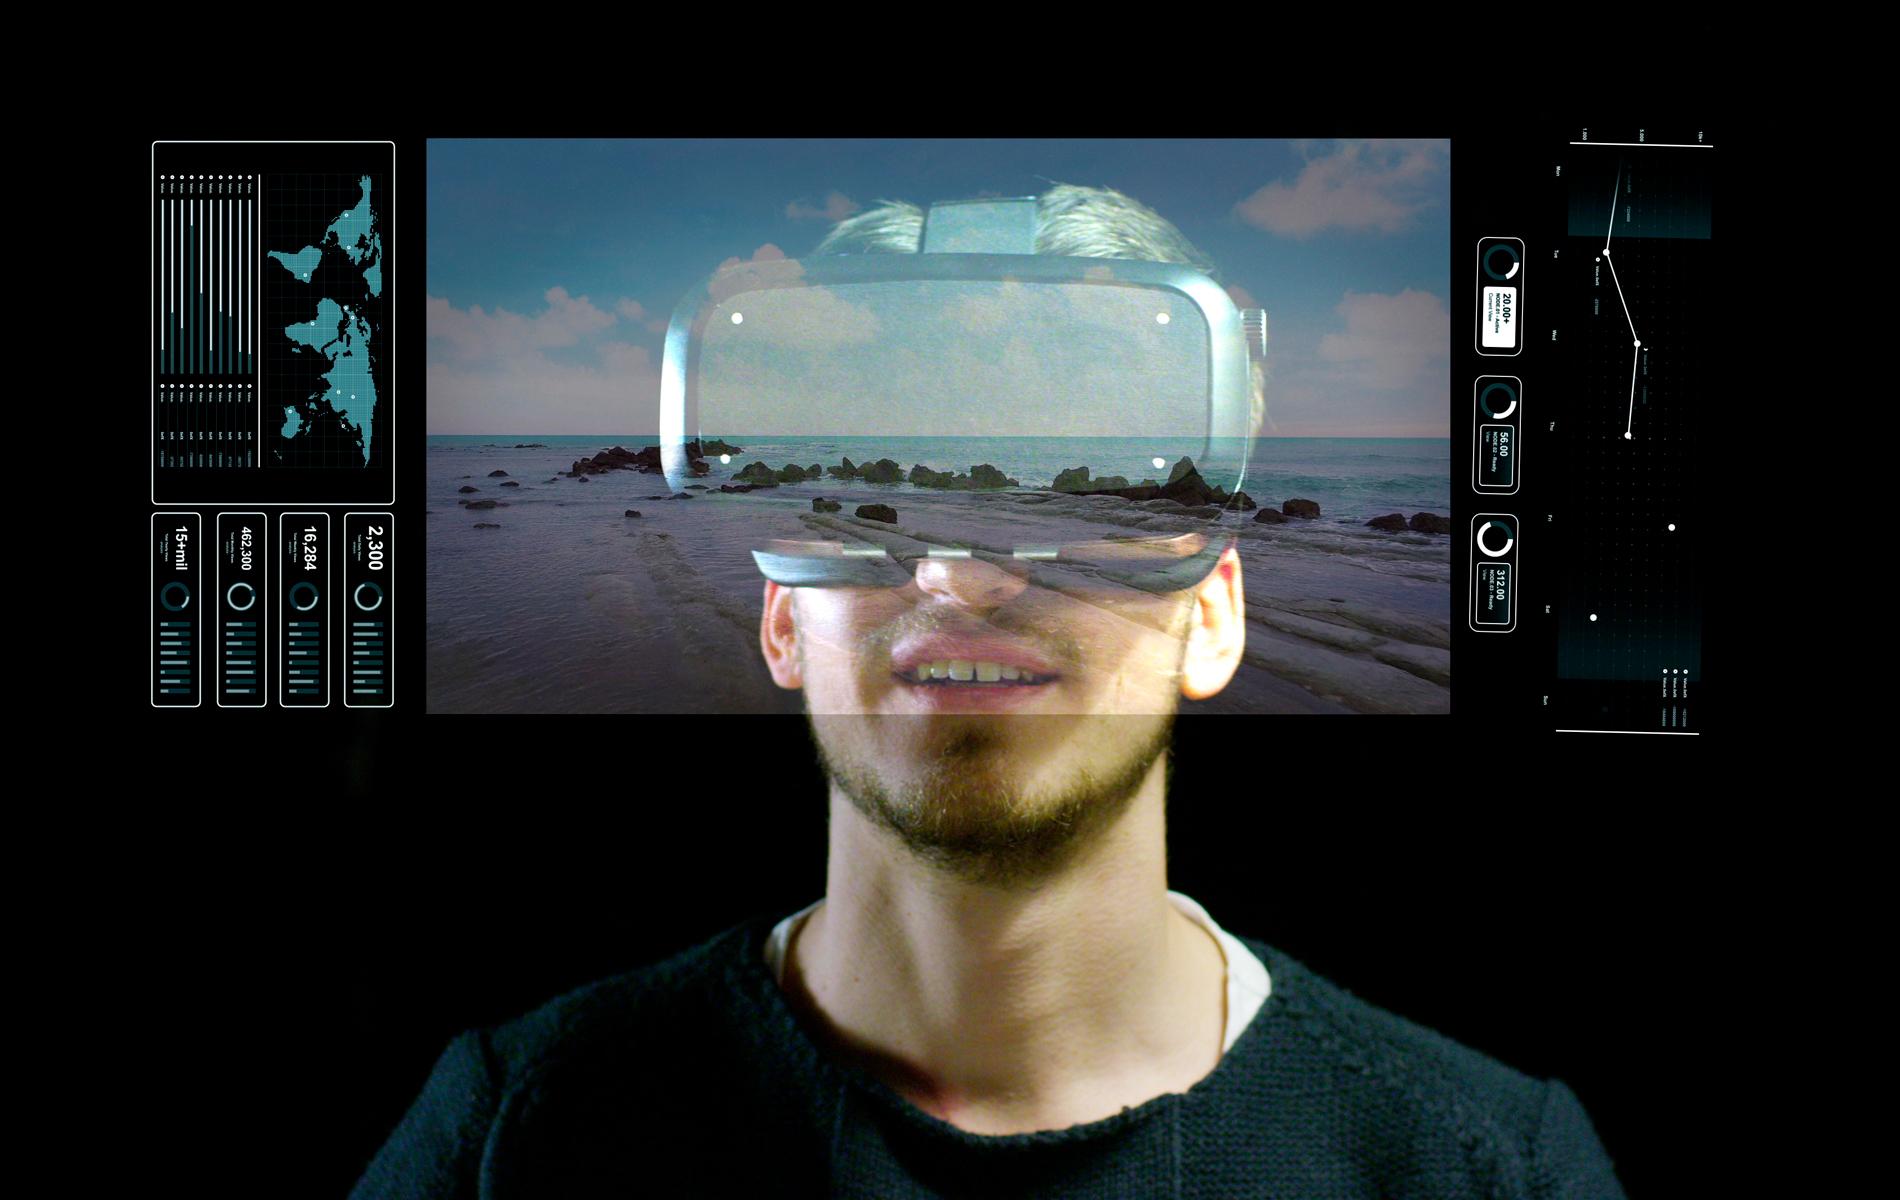 Vr testing. Парень в виртуальной реальности. Photo Booth augmented reality. Красивая картинка VR мужчина в очках рисунок. Interactive photo Booth augmented reality.